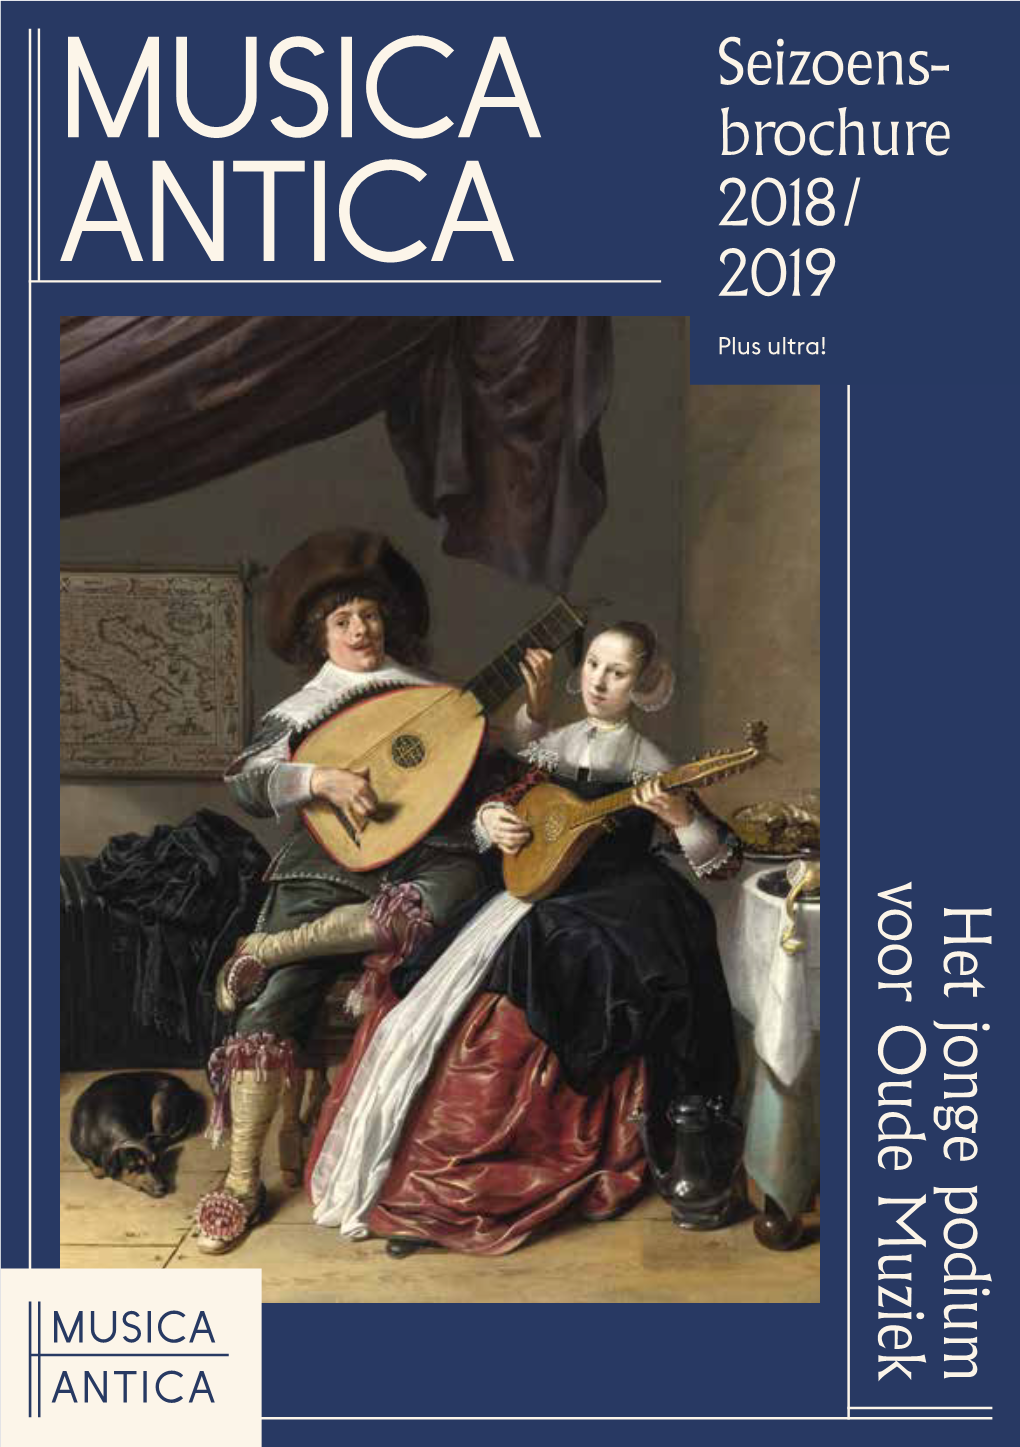 Musica Antica / About Musica Antica